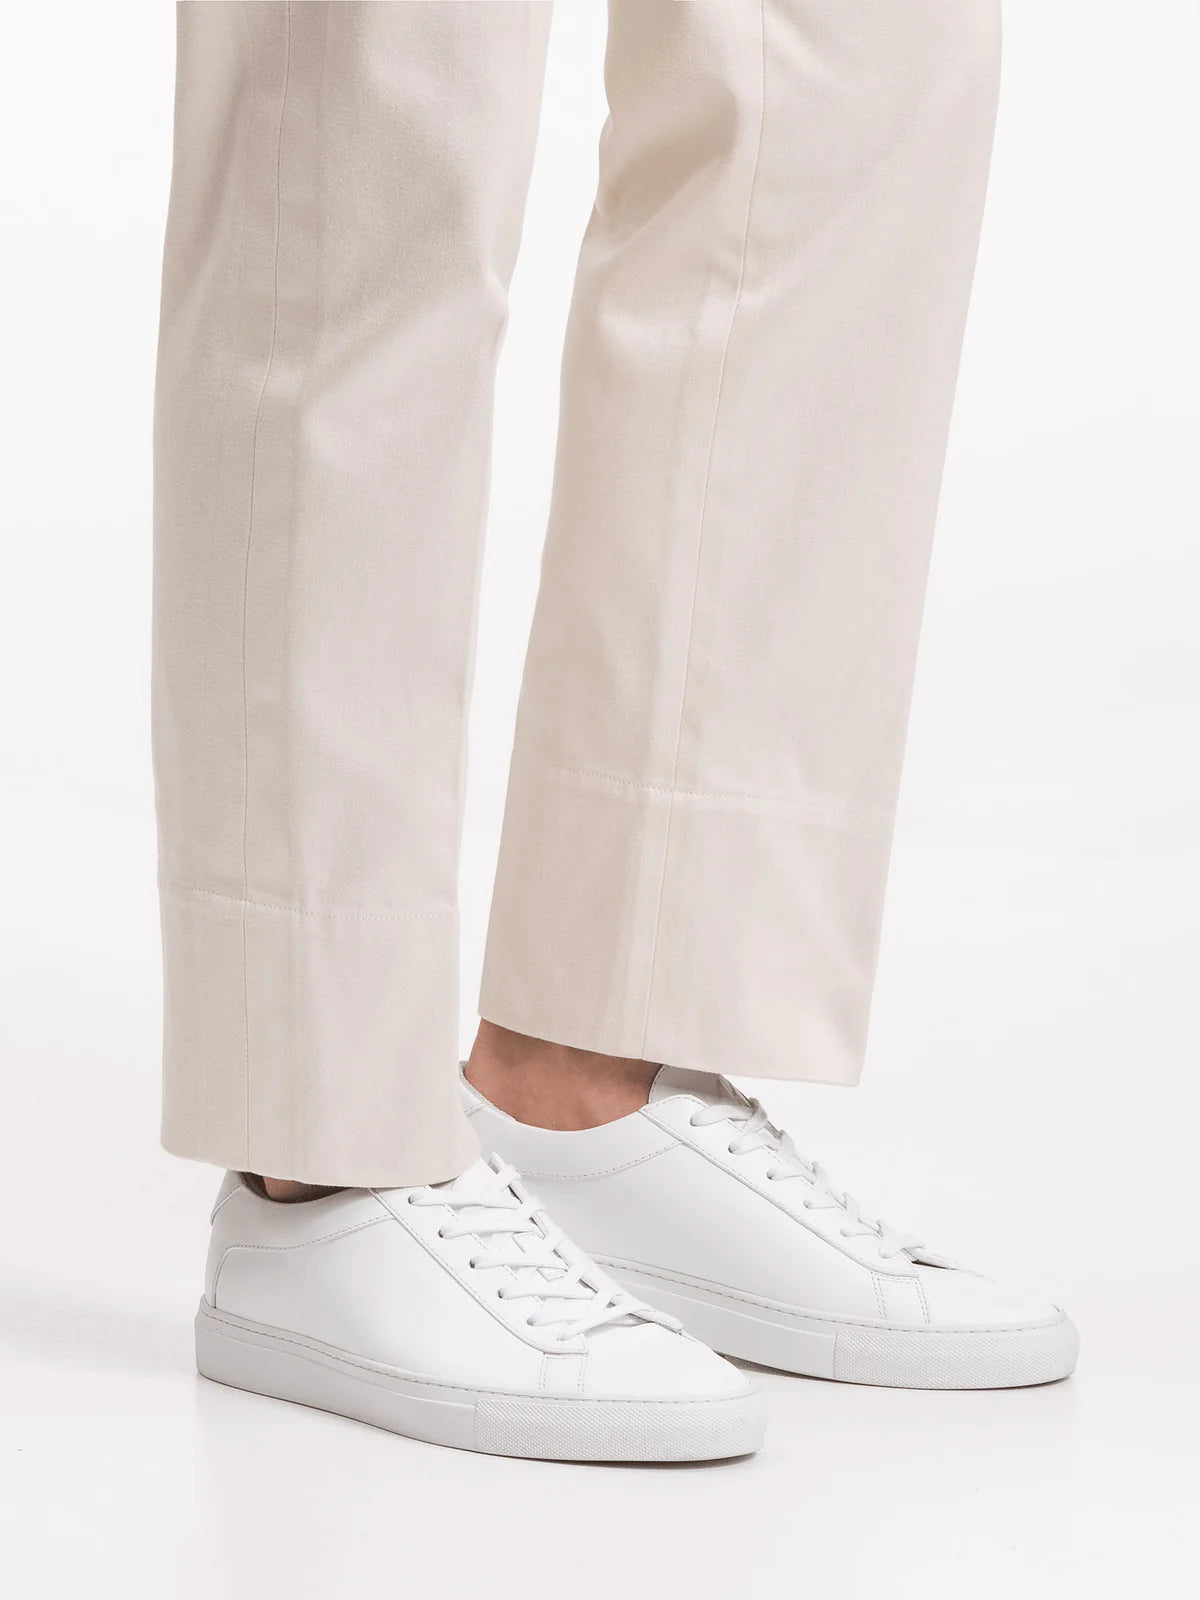 Koio Sneakers “Capri” Triple White - pelle bianca - Koio